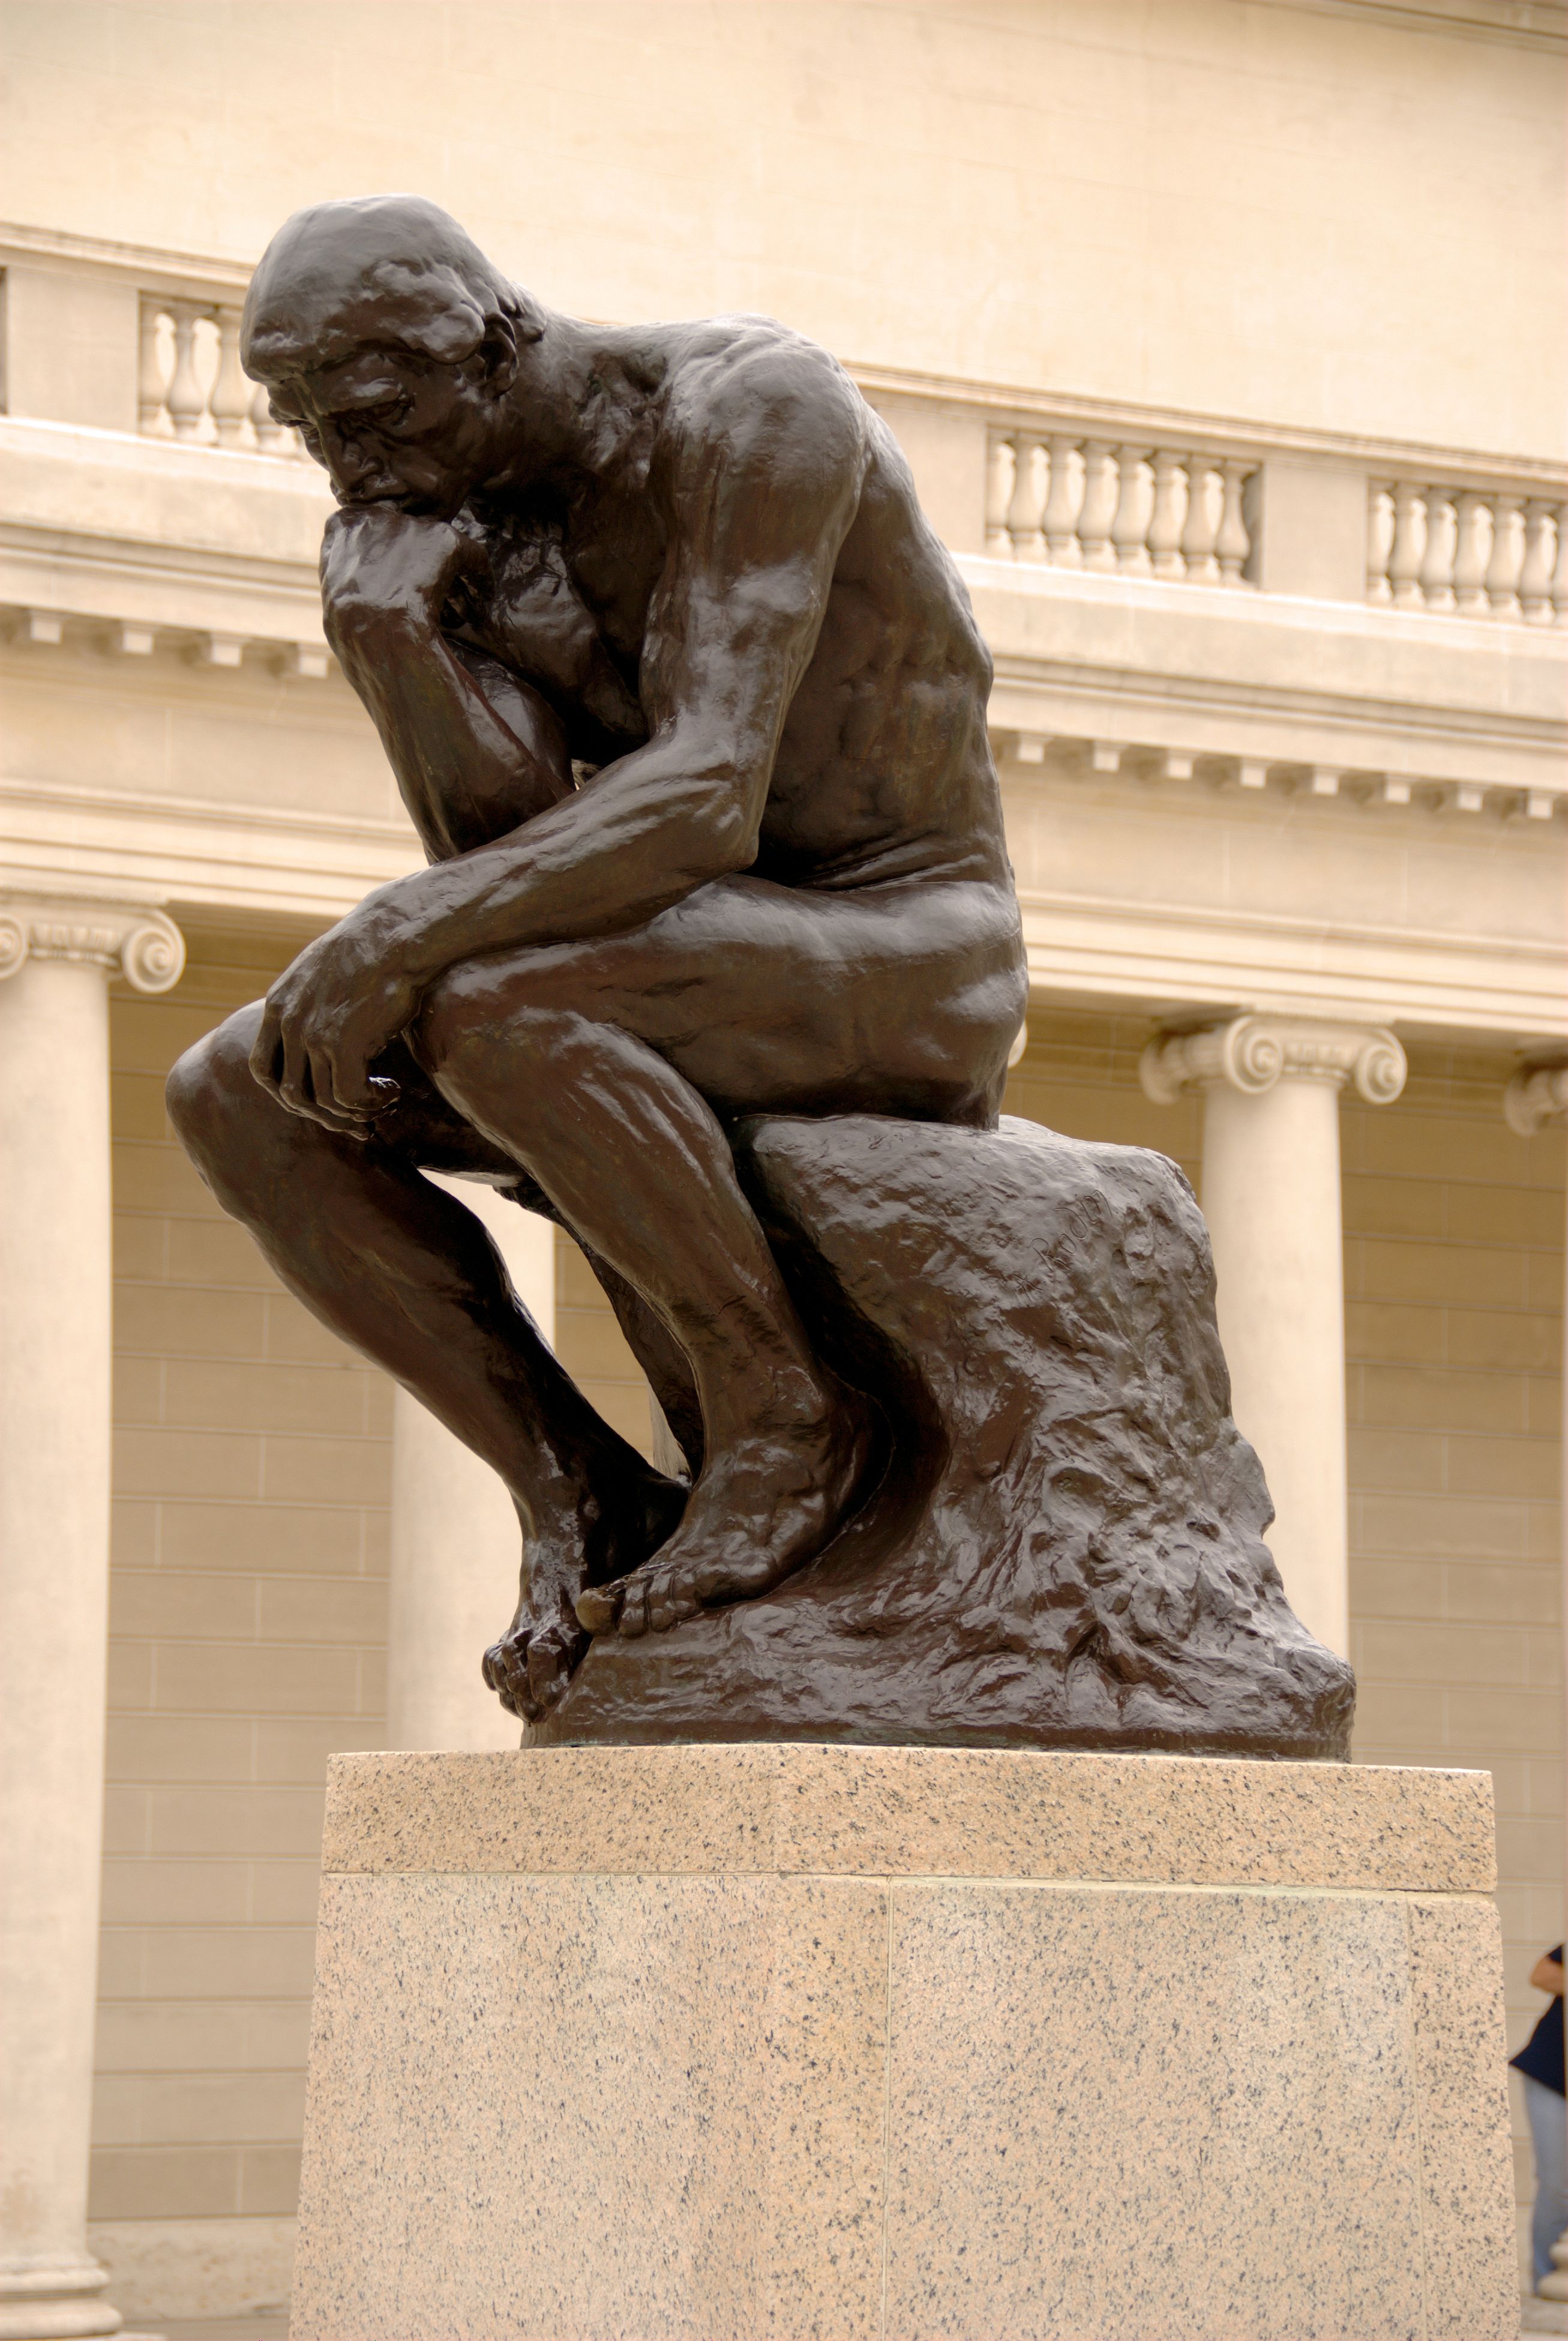 De denker by Auguste Rodin - 1880 - 197,24 cm 